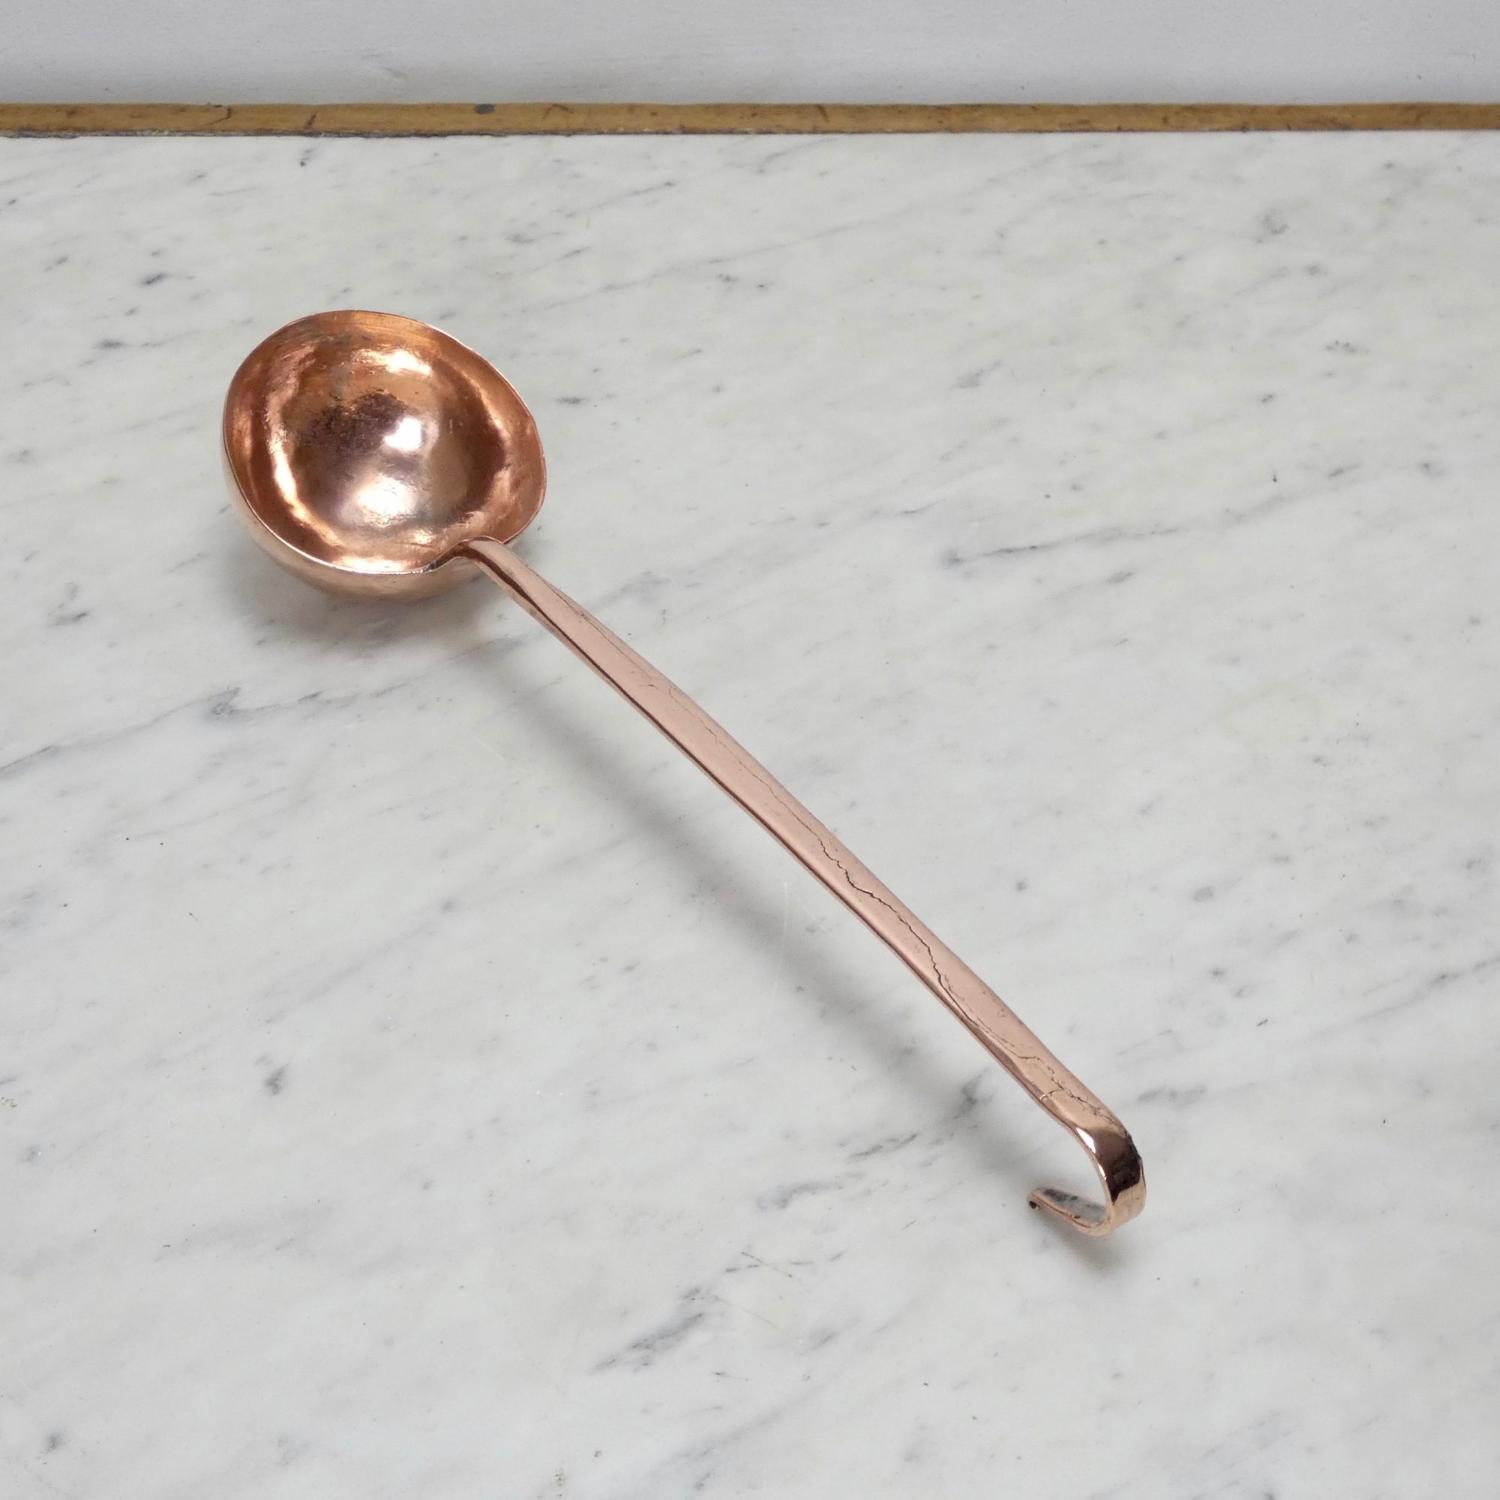 Small copper ladle